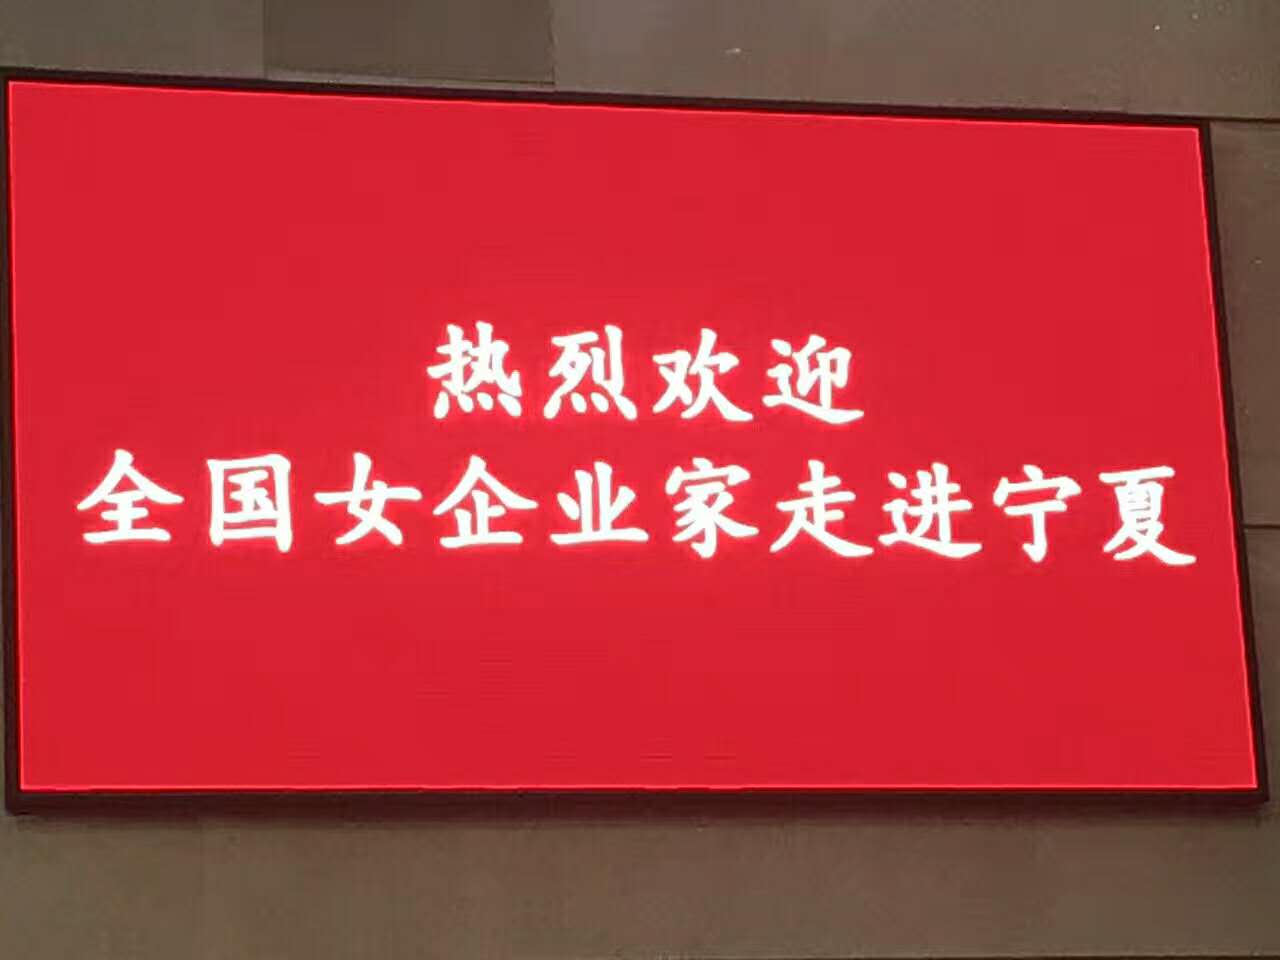 8月5日中国女企业家一带一路宁夏主题活动召开，我社理事长韩素兰应邀参与此次会议